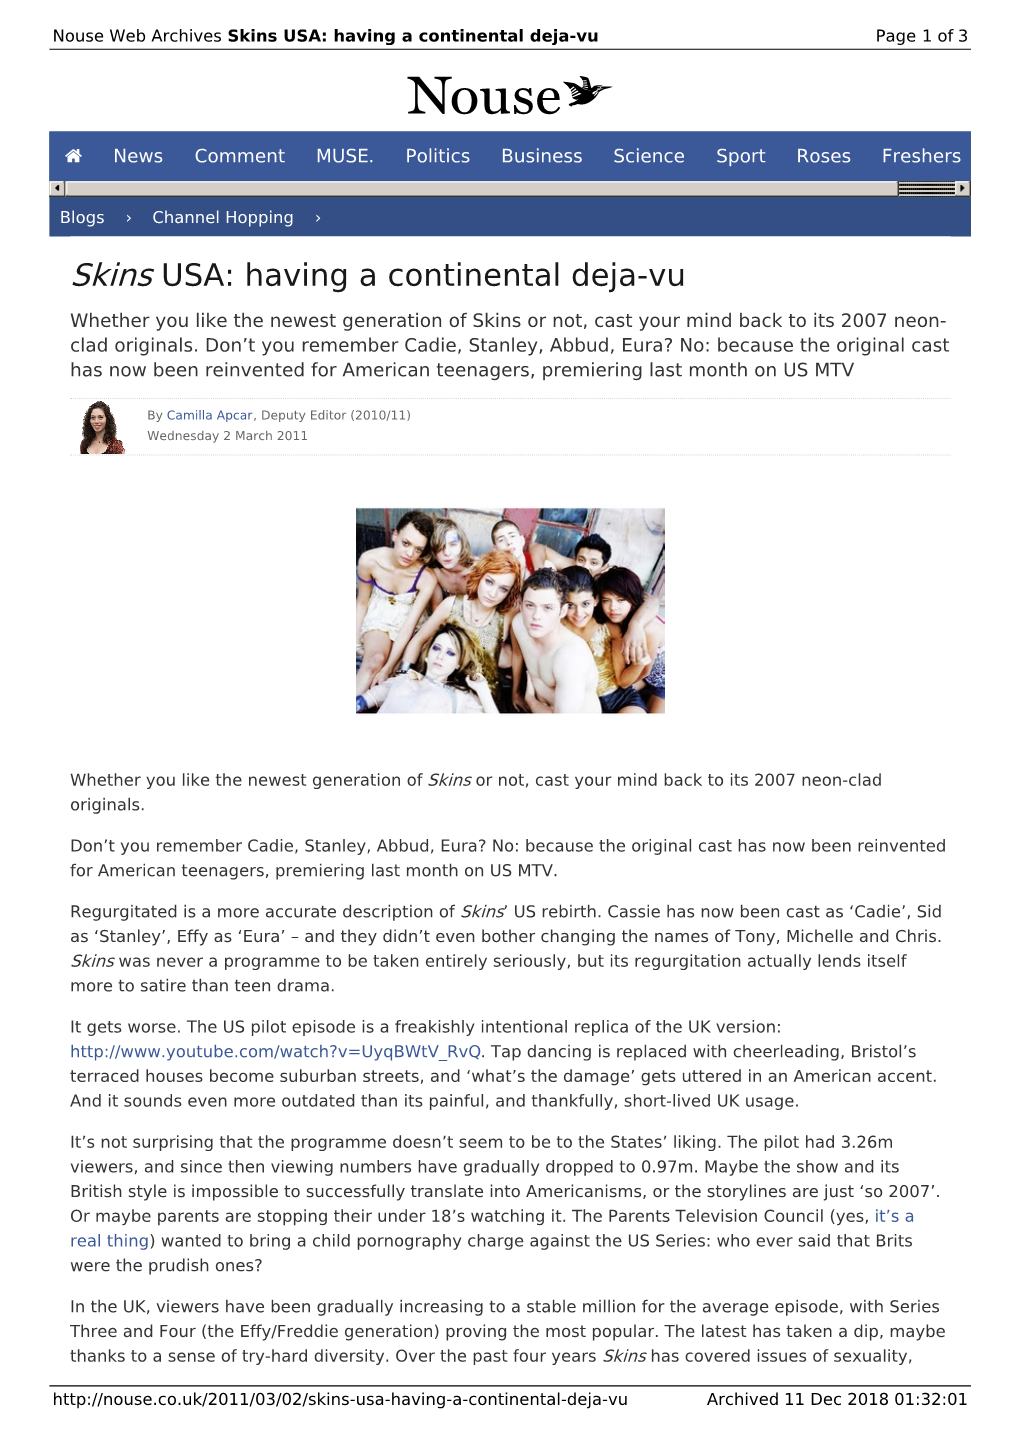 Skins USA: Having a Continental Deja-Vu | Nouse